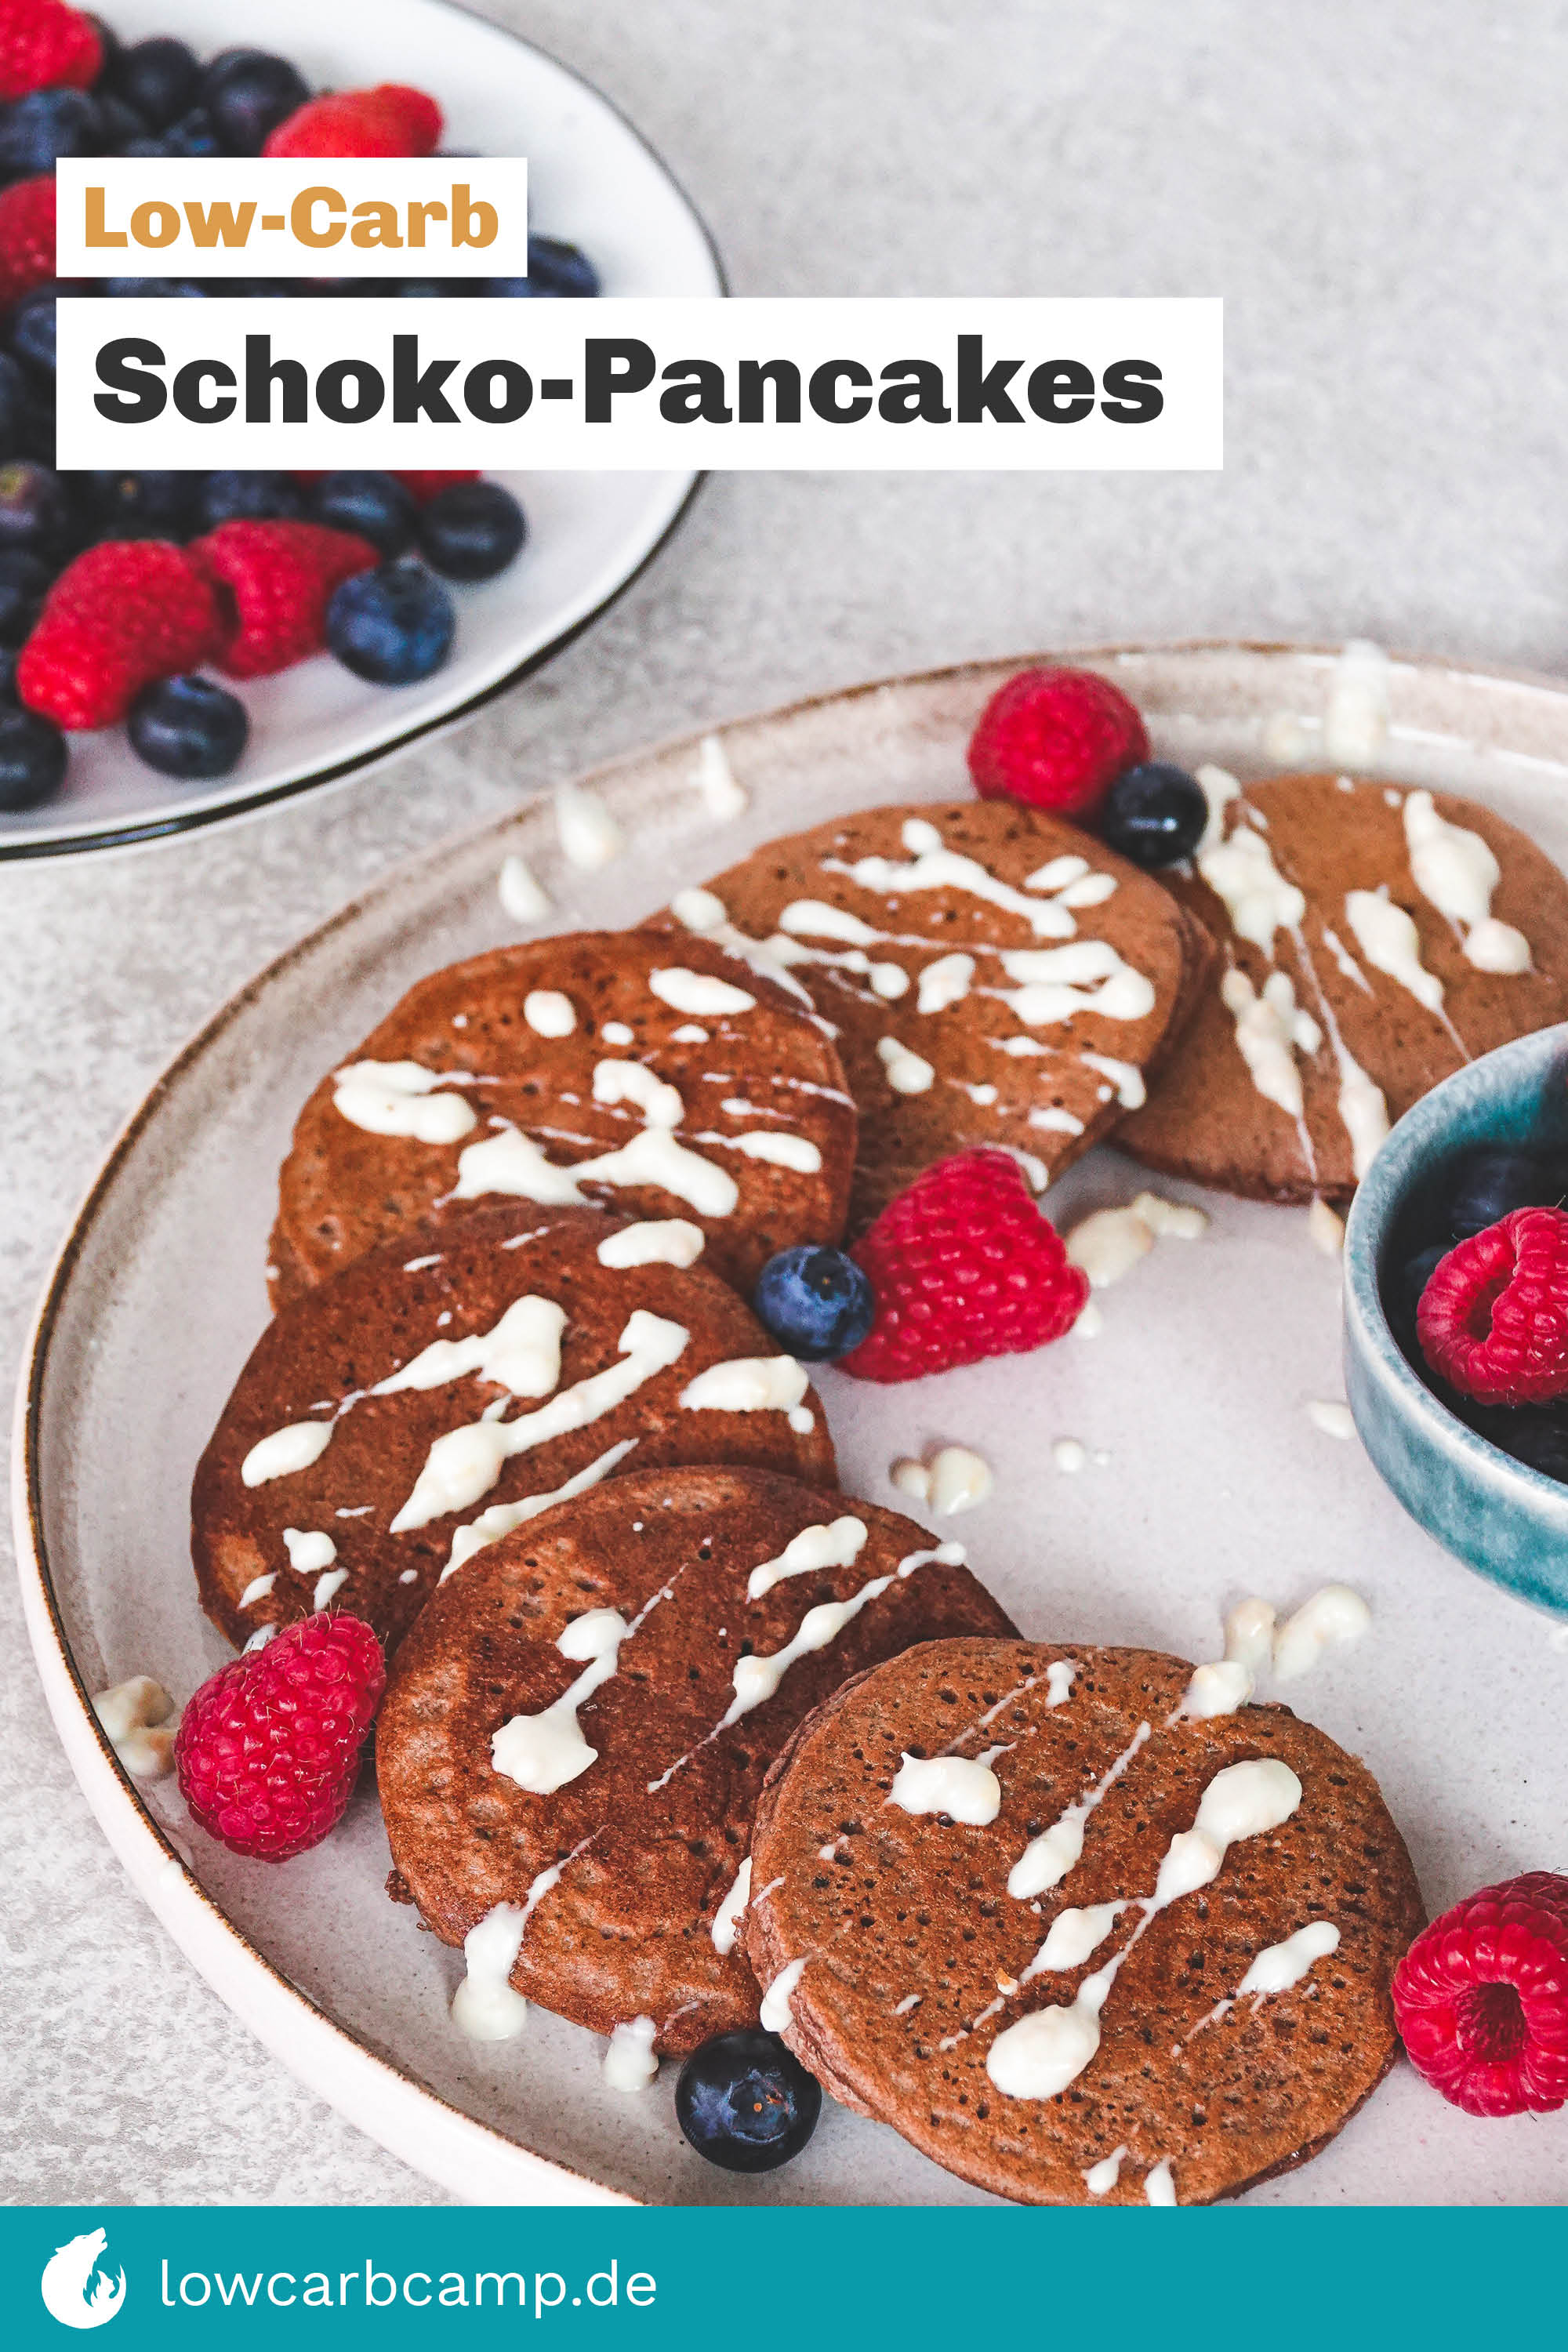 Low-Carb Schoko-Pancakes